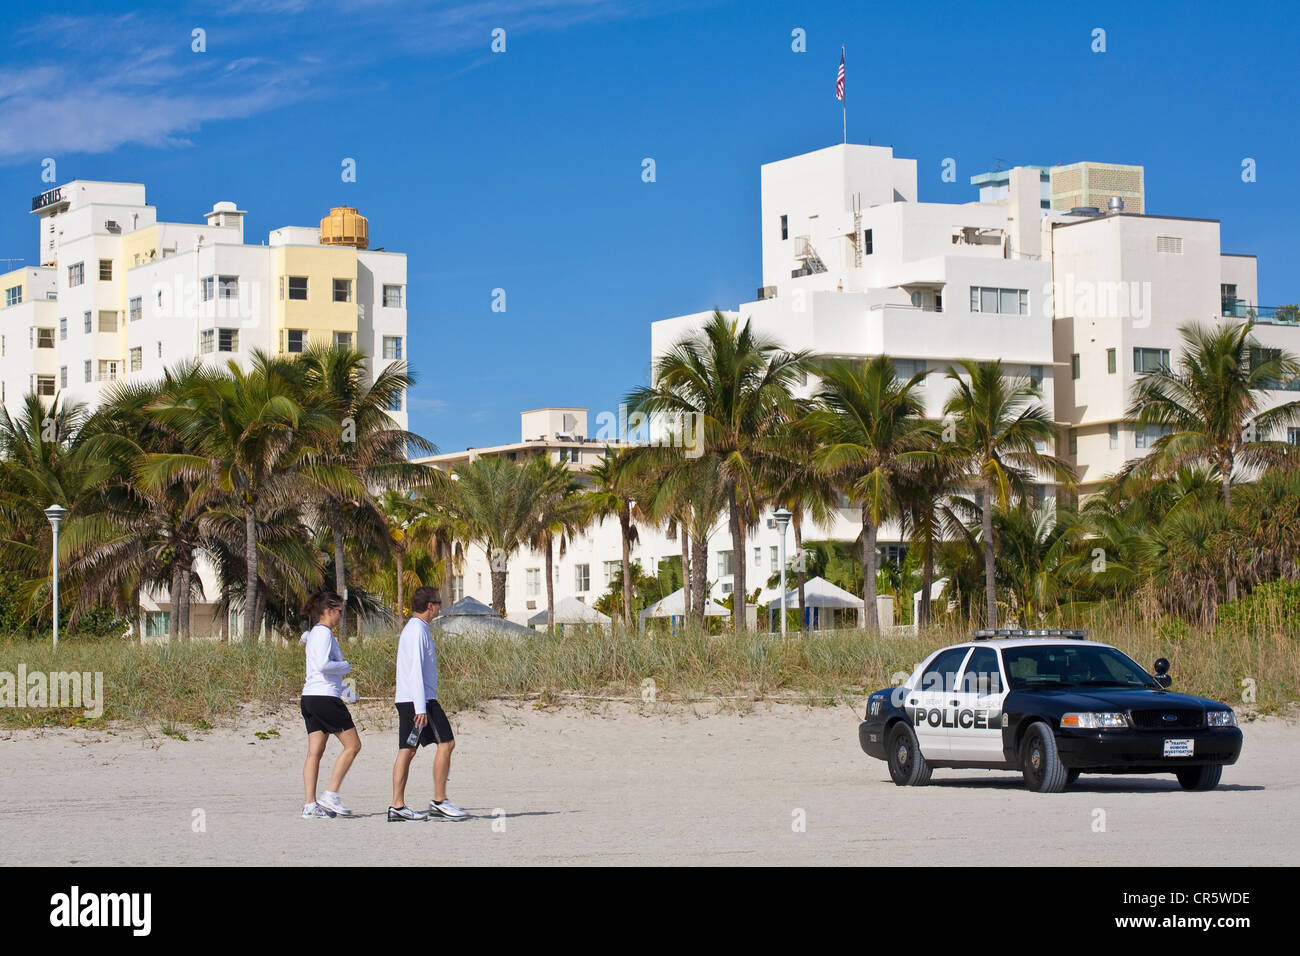 United States, Florida, Miami Beach, South Beach, voiture de police sur la plage Banque D'Images